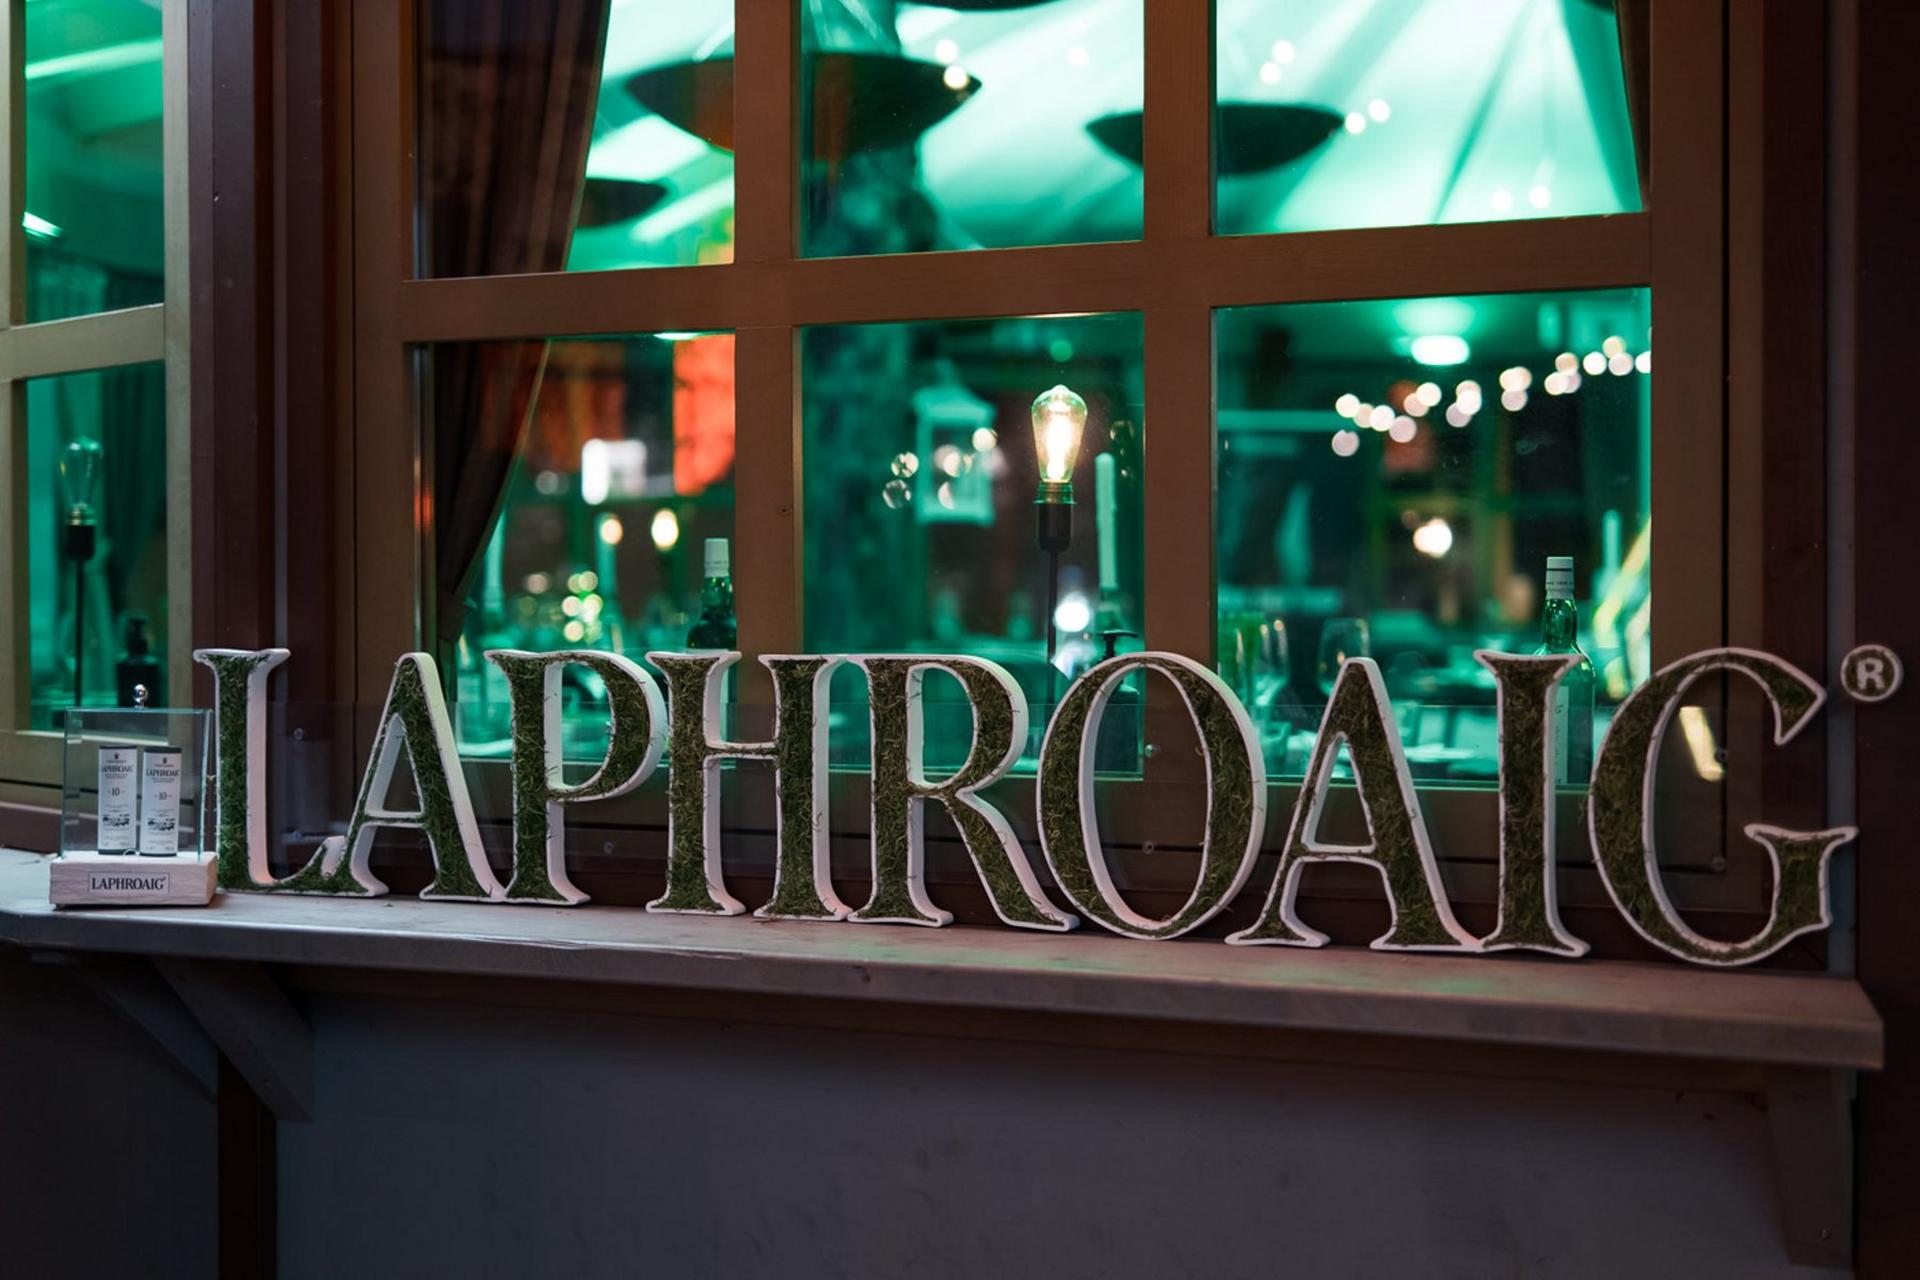 Der Schriftzug vor dem in Laphroiag-Grün getauchten Pavillon. Bild: AdrianAlmasan